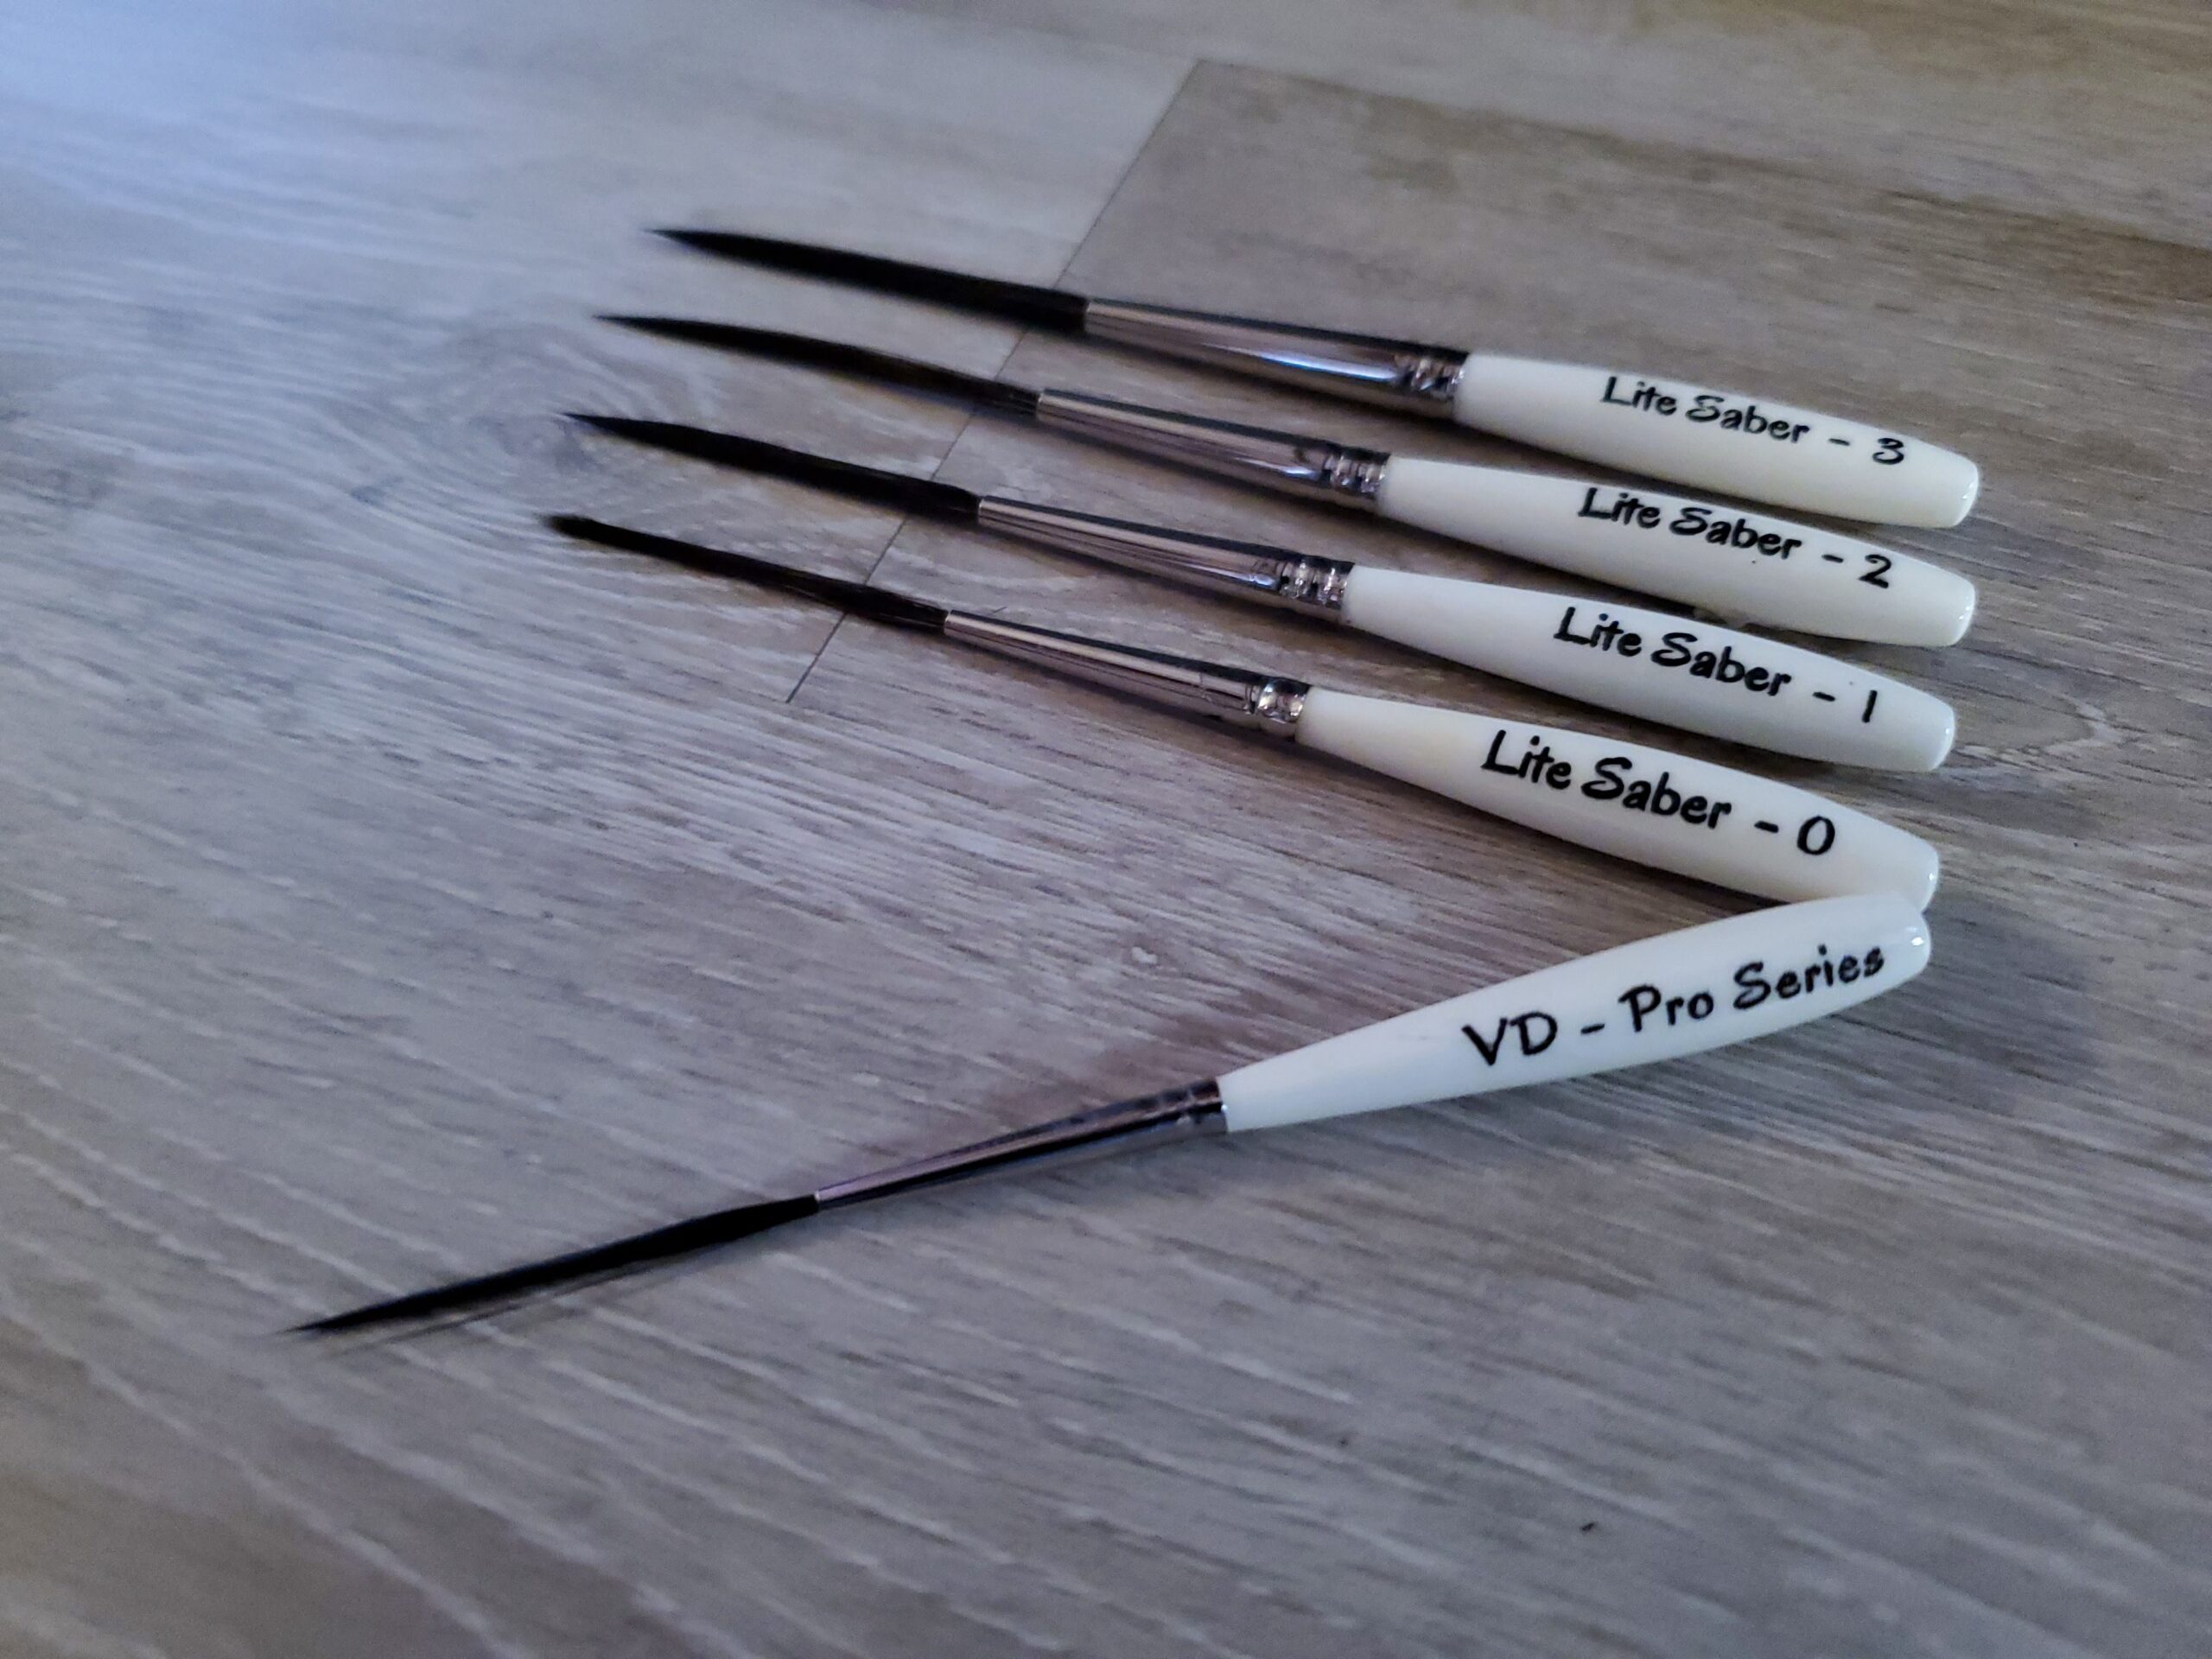 Von Dago Pro-Series Pinstriping brushes  Von Dago Pro-Series Pinstriping  brushes